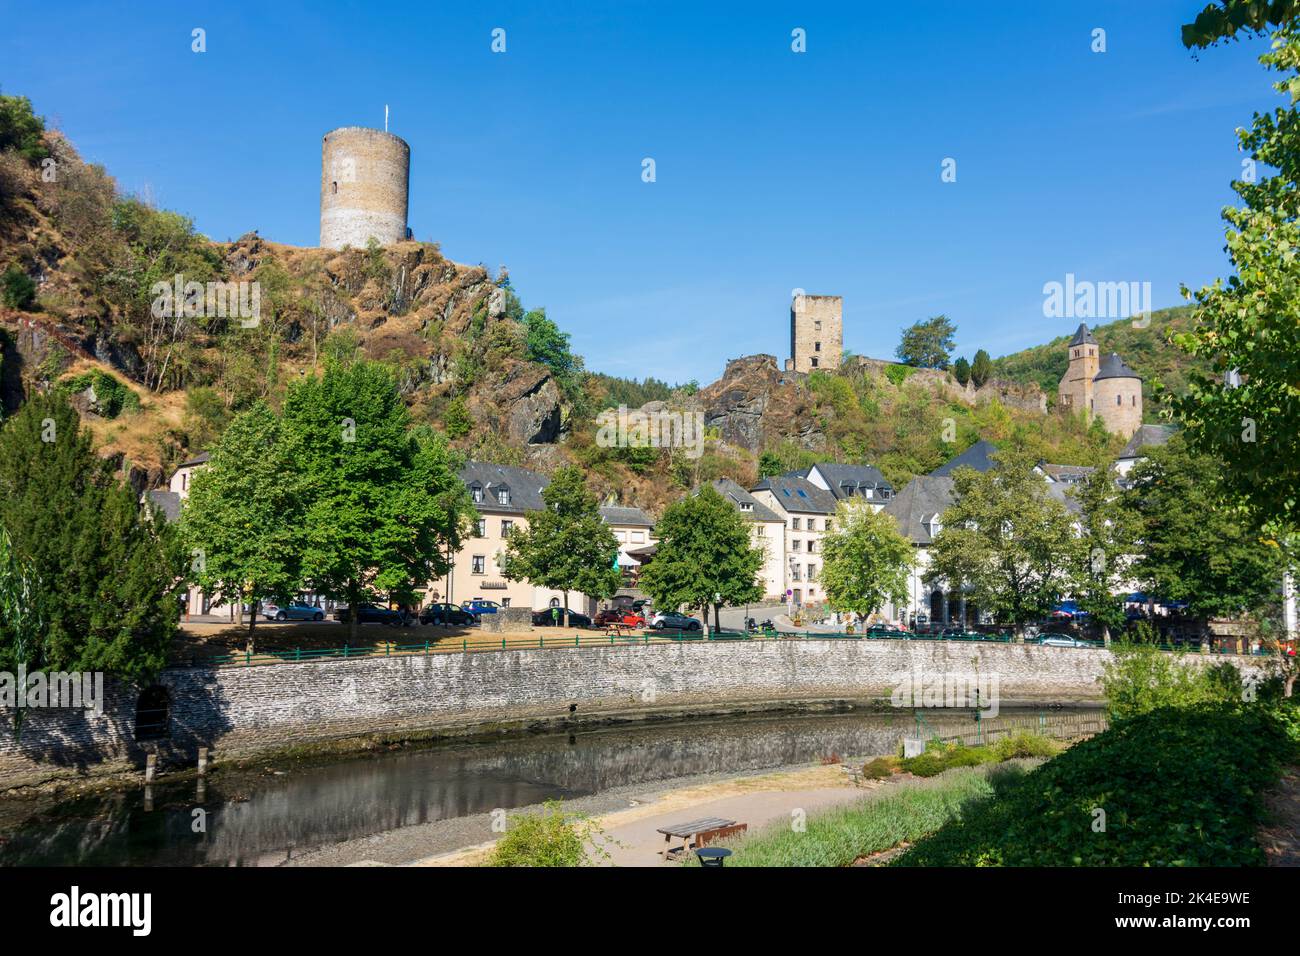 Esch-sur-Sûre (Esch-Sauer): Castello di Esch-sur-Sure, centro storico, valle del fiume Sauer (Sure) in Lussemburgo Foto Stock